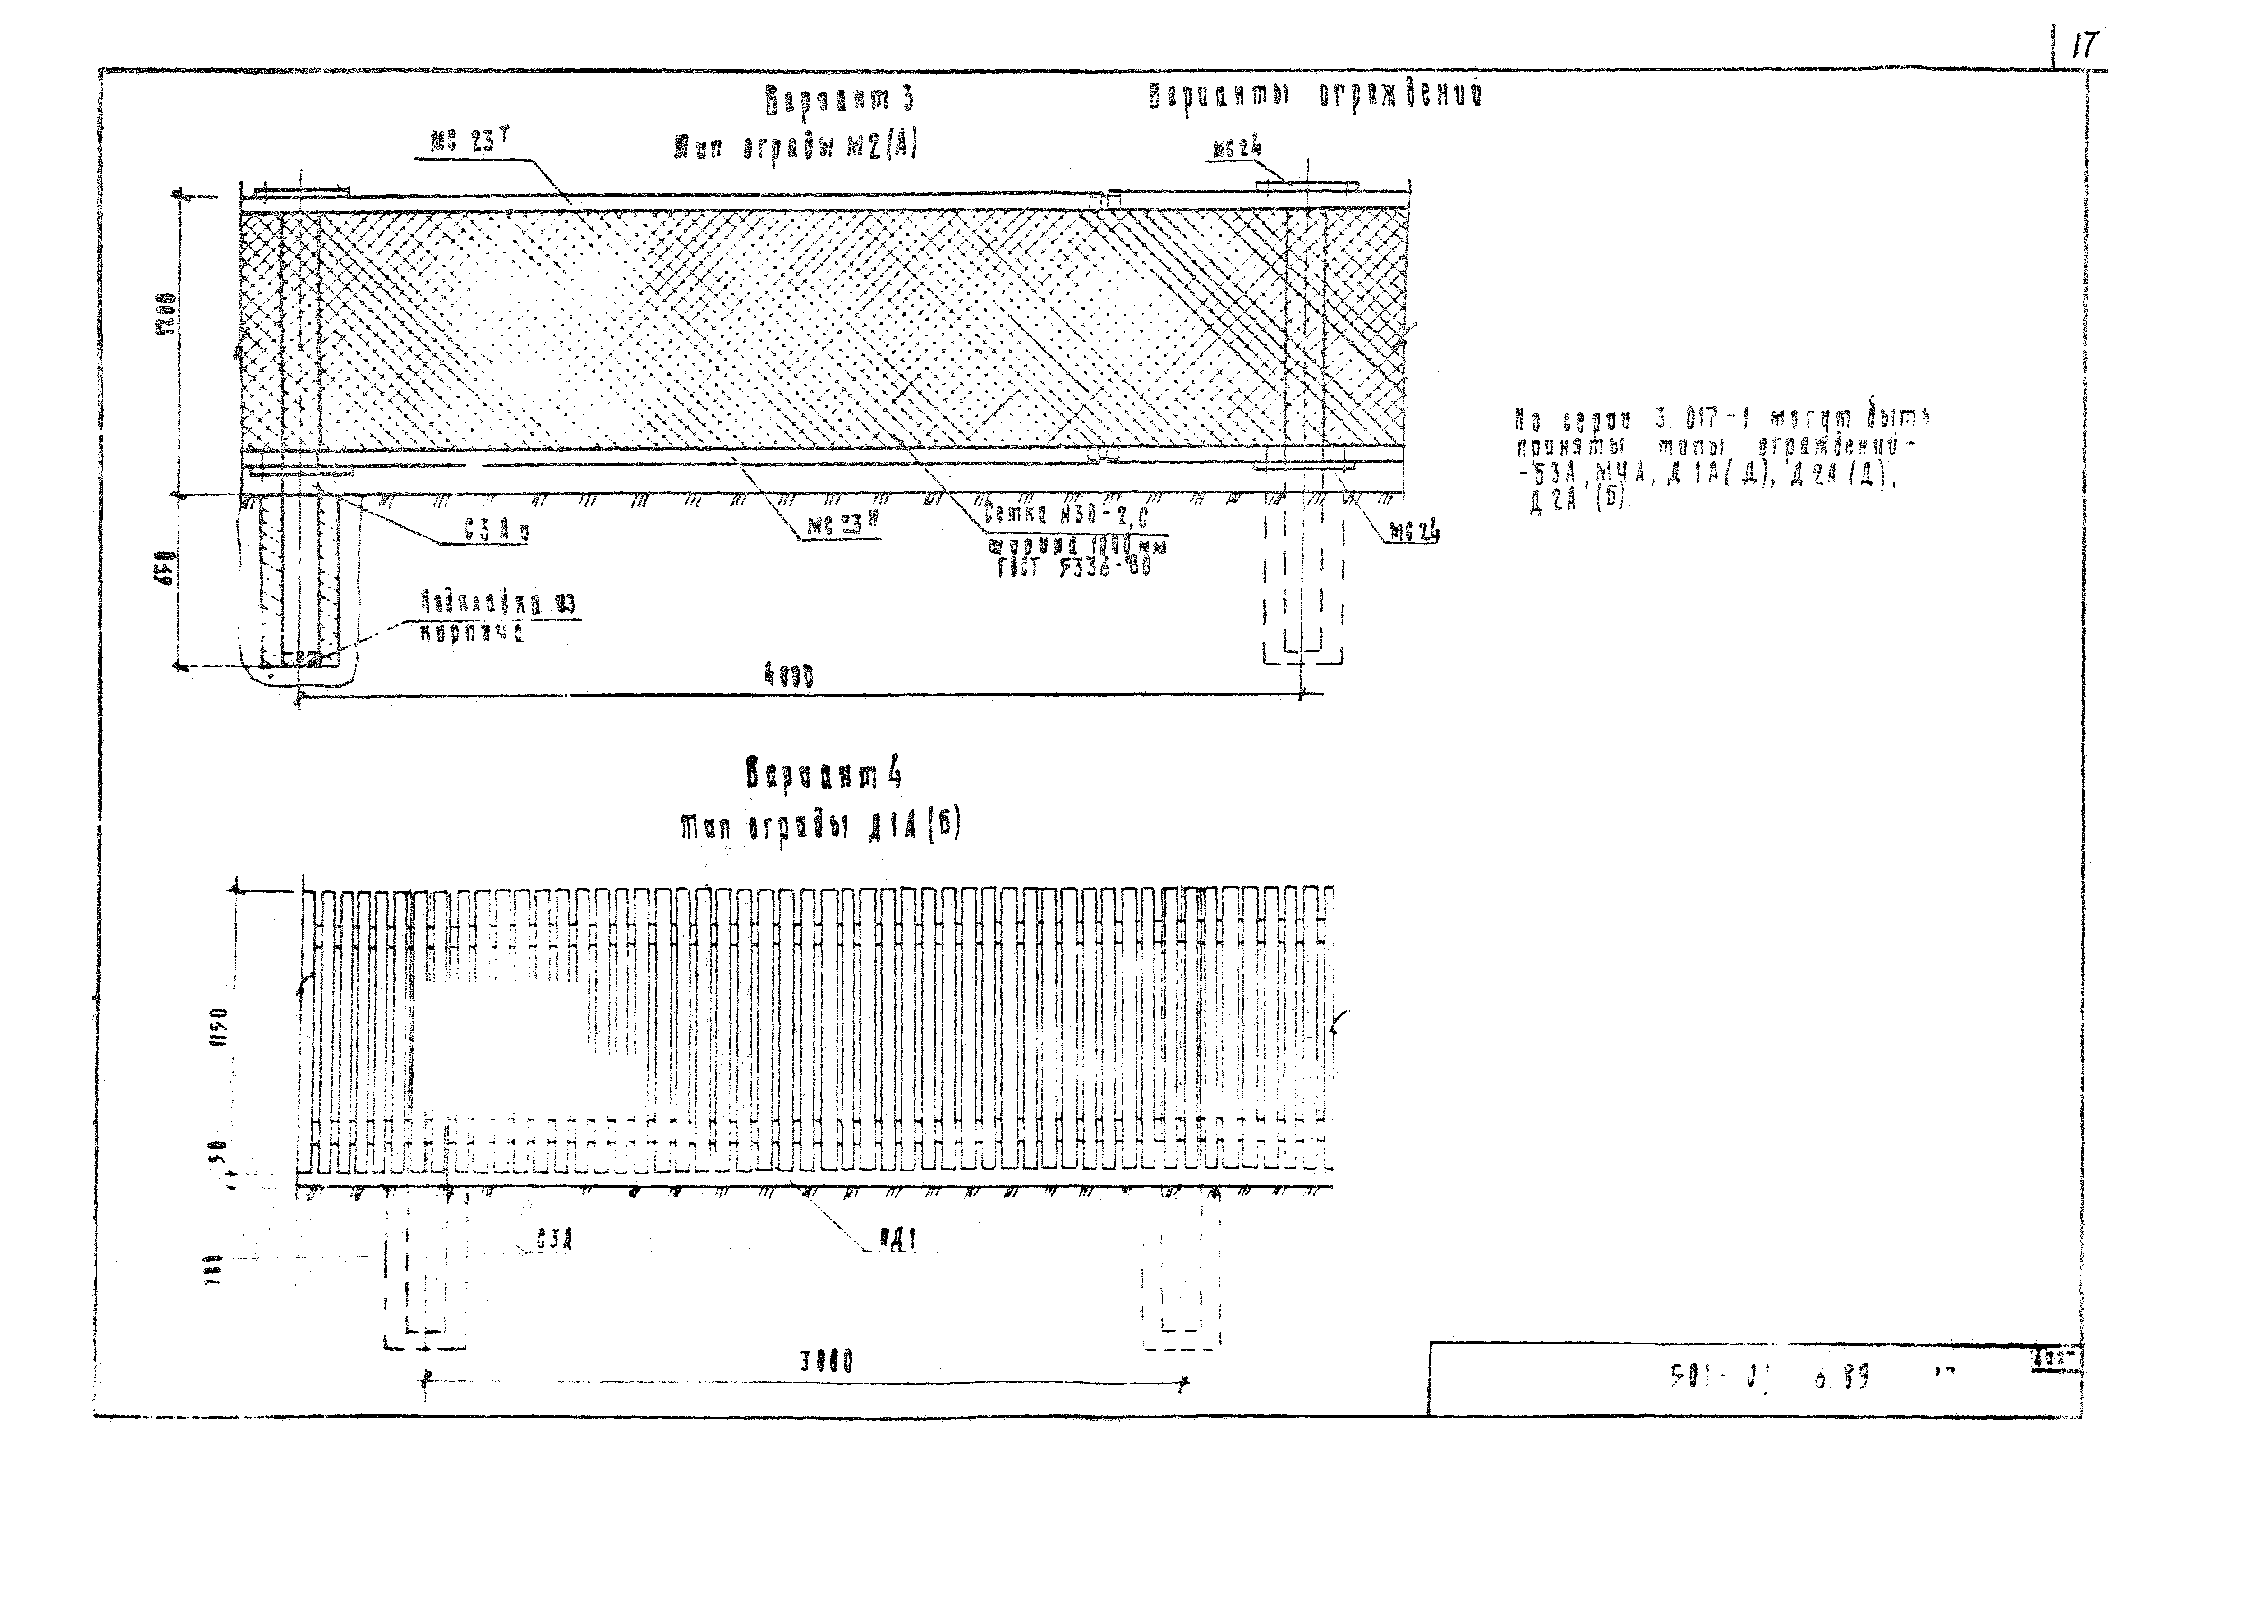 Типовые материалы для проектирования 501-01-6.89